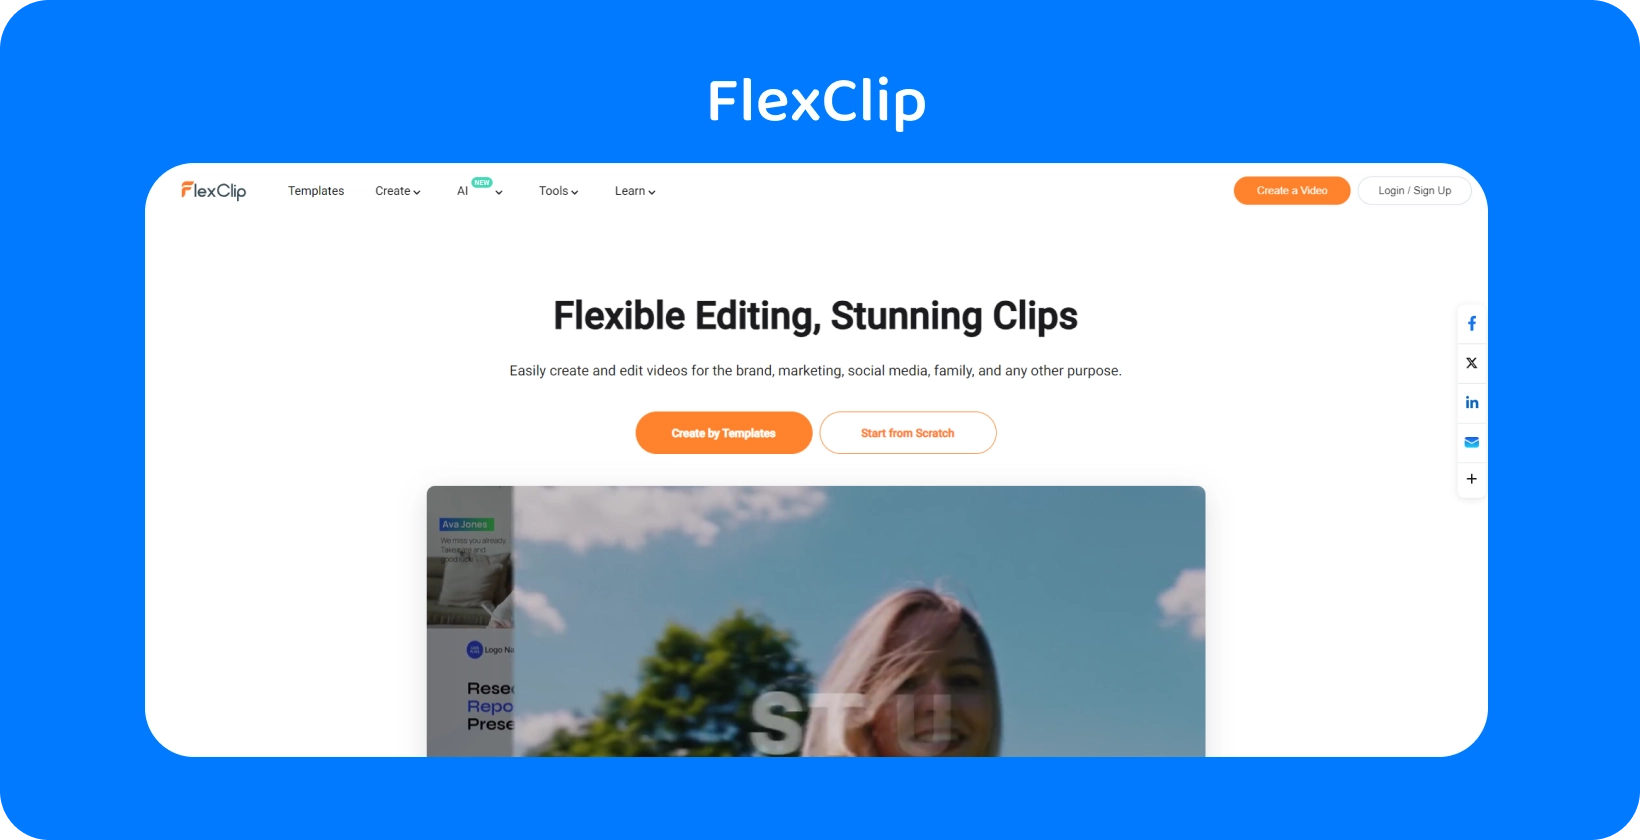 Інтерфейс FlexClip Text to Speech Video Maker показує простий і ефективний спосіб перетворення тексту на реалістичне AI мовлення.